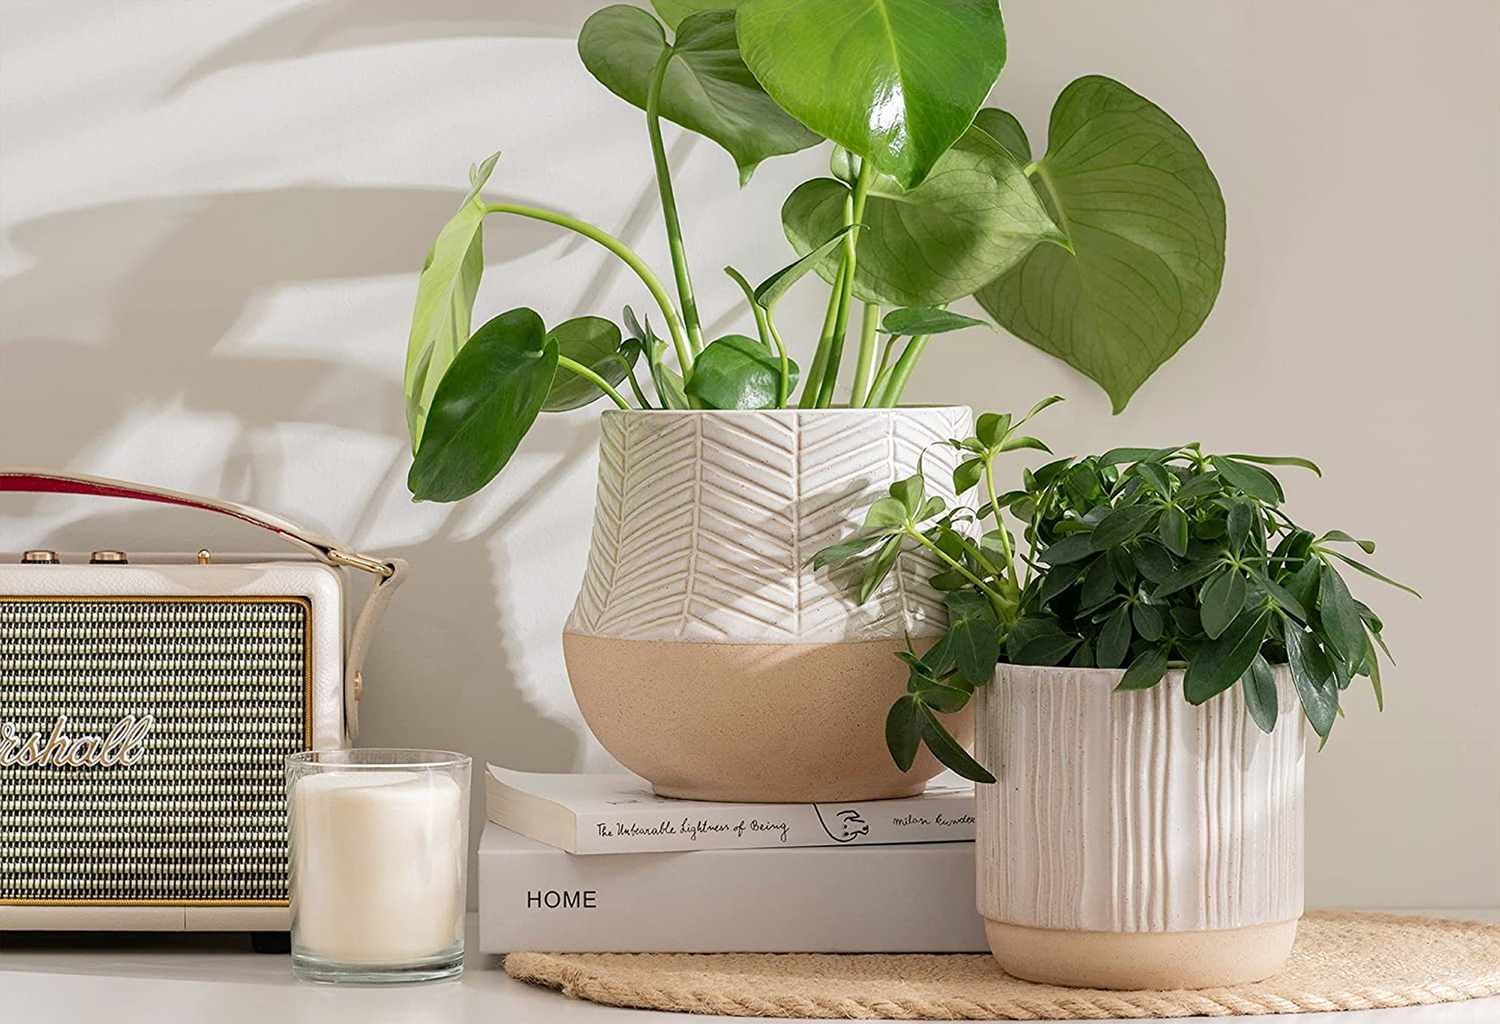 Home indoor planter